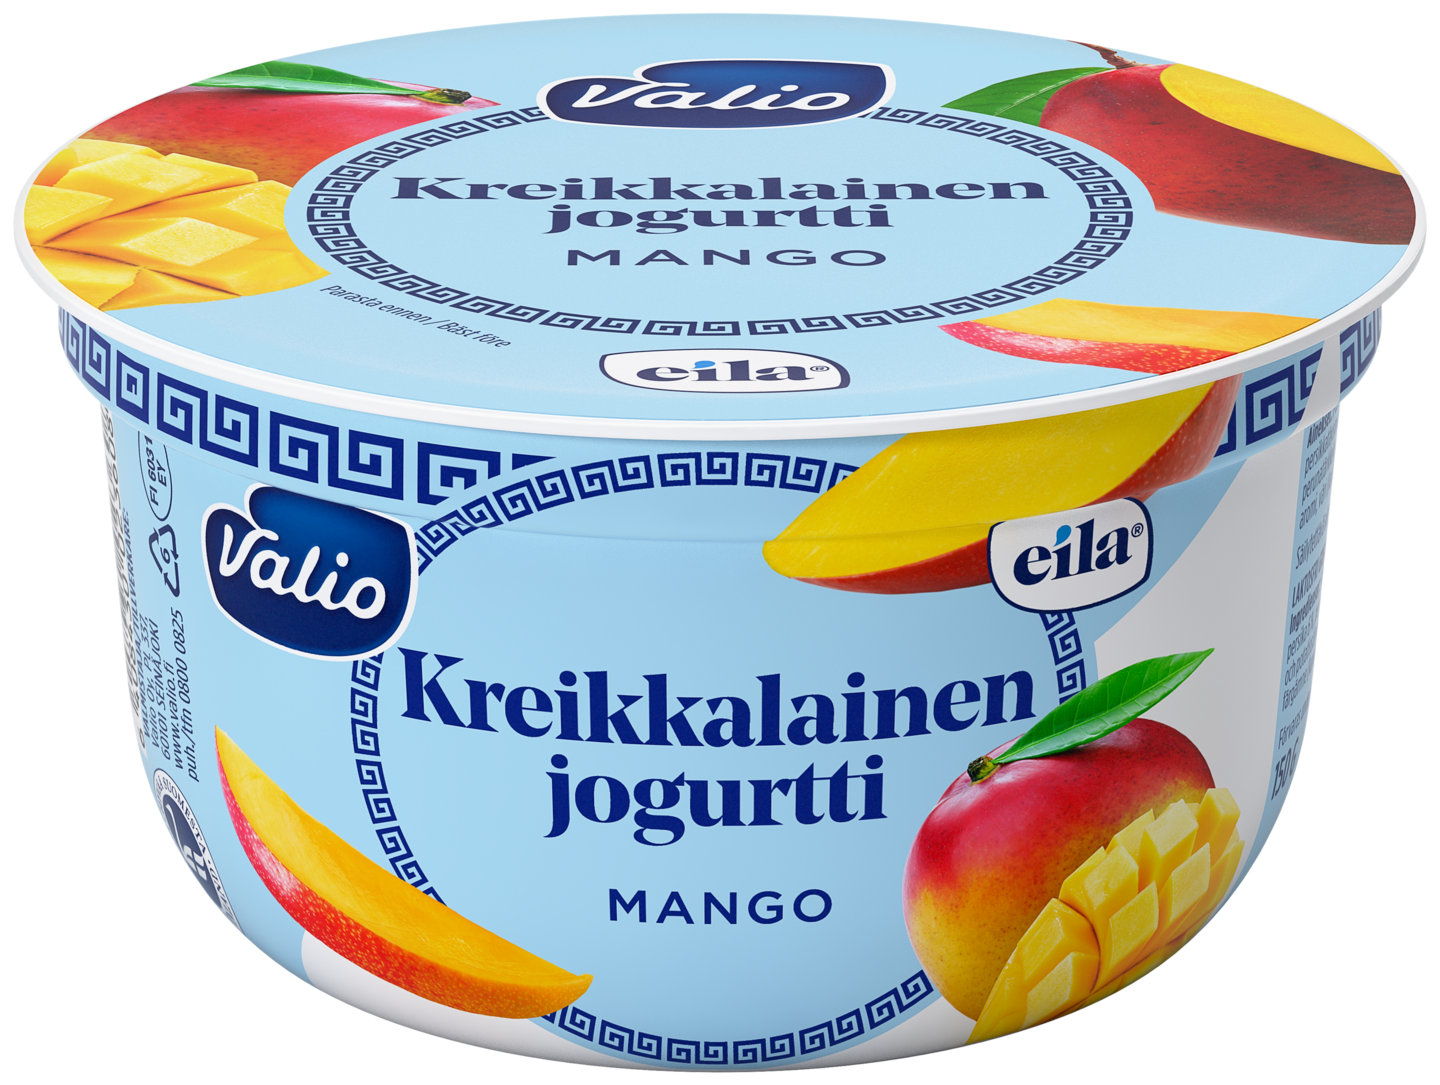 Valio kreikkalainen jogurtti 150g mango laktoositon